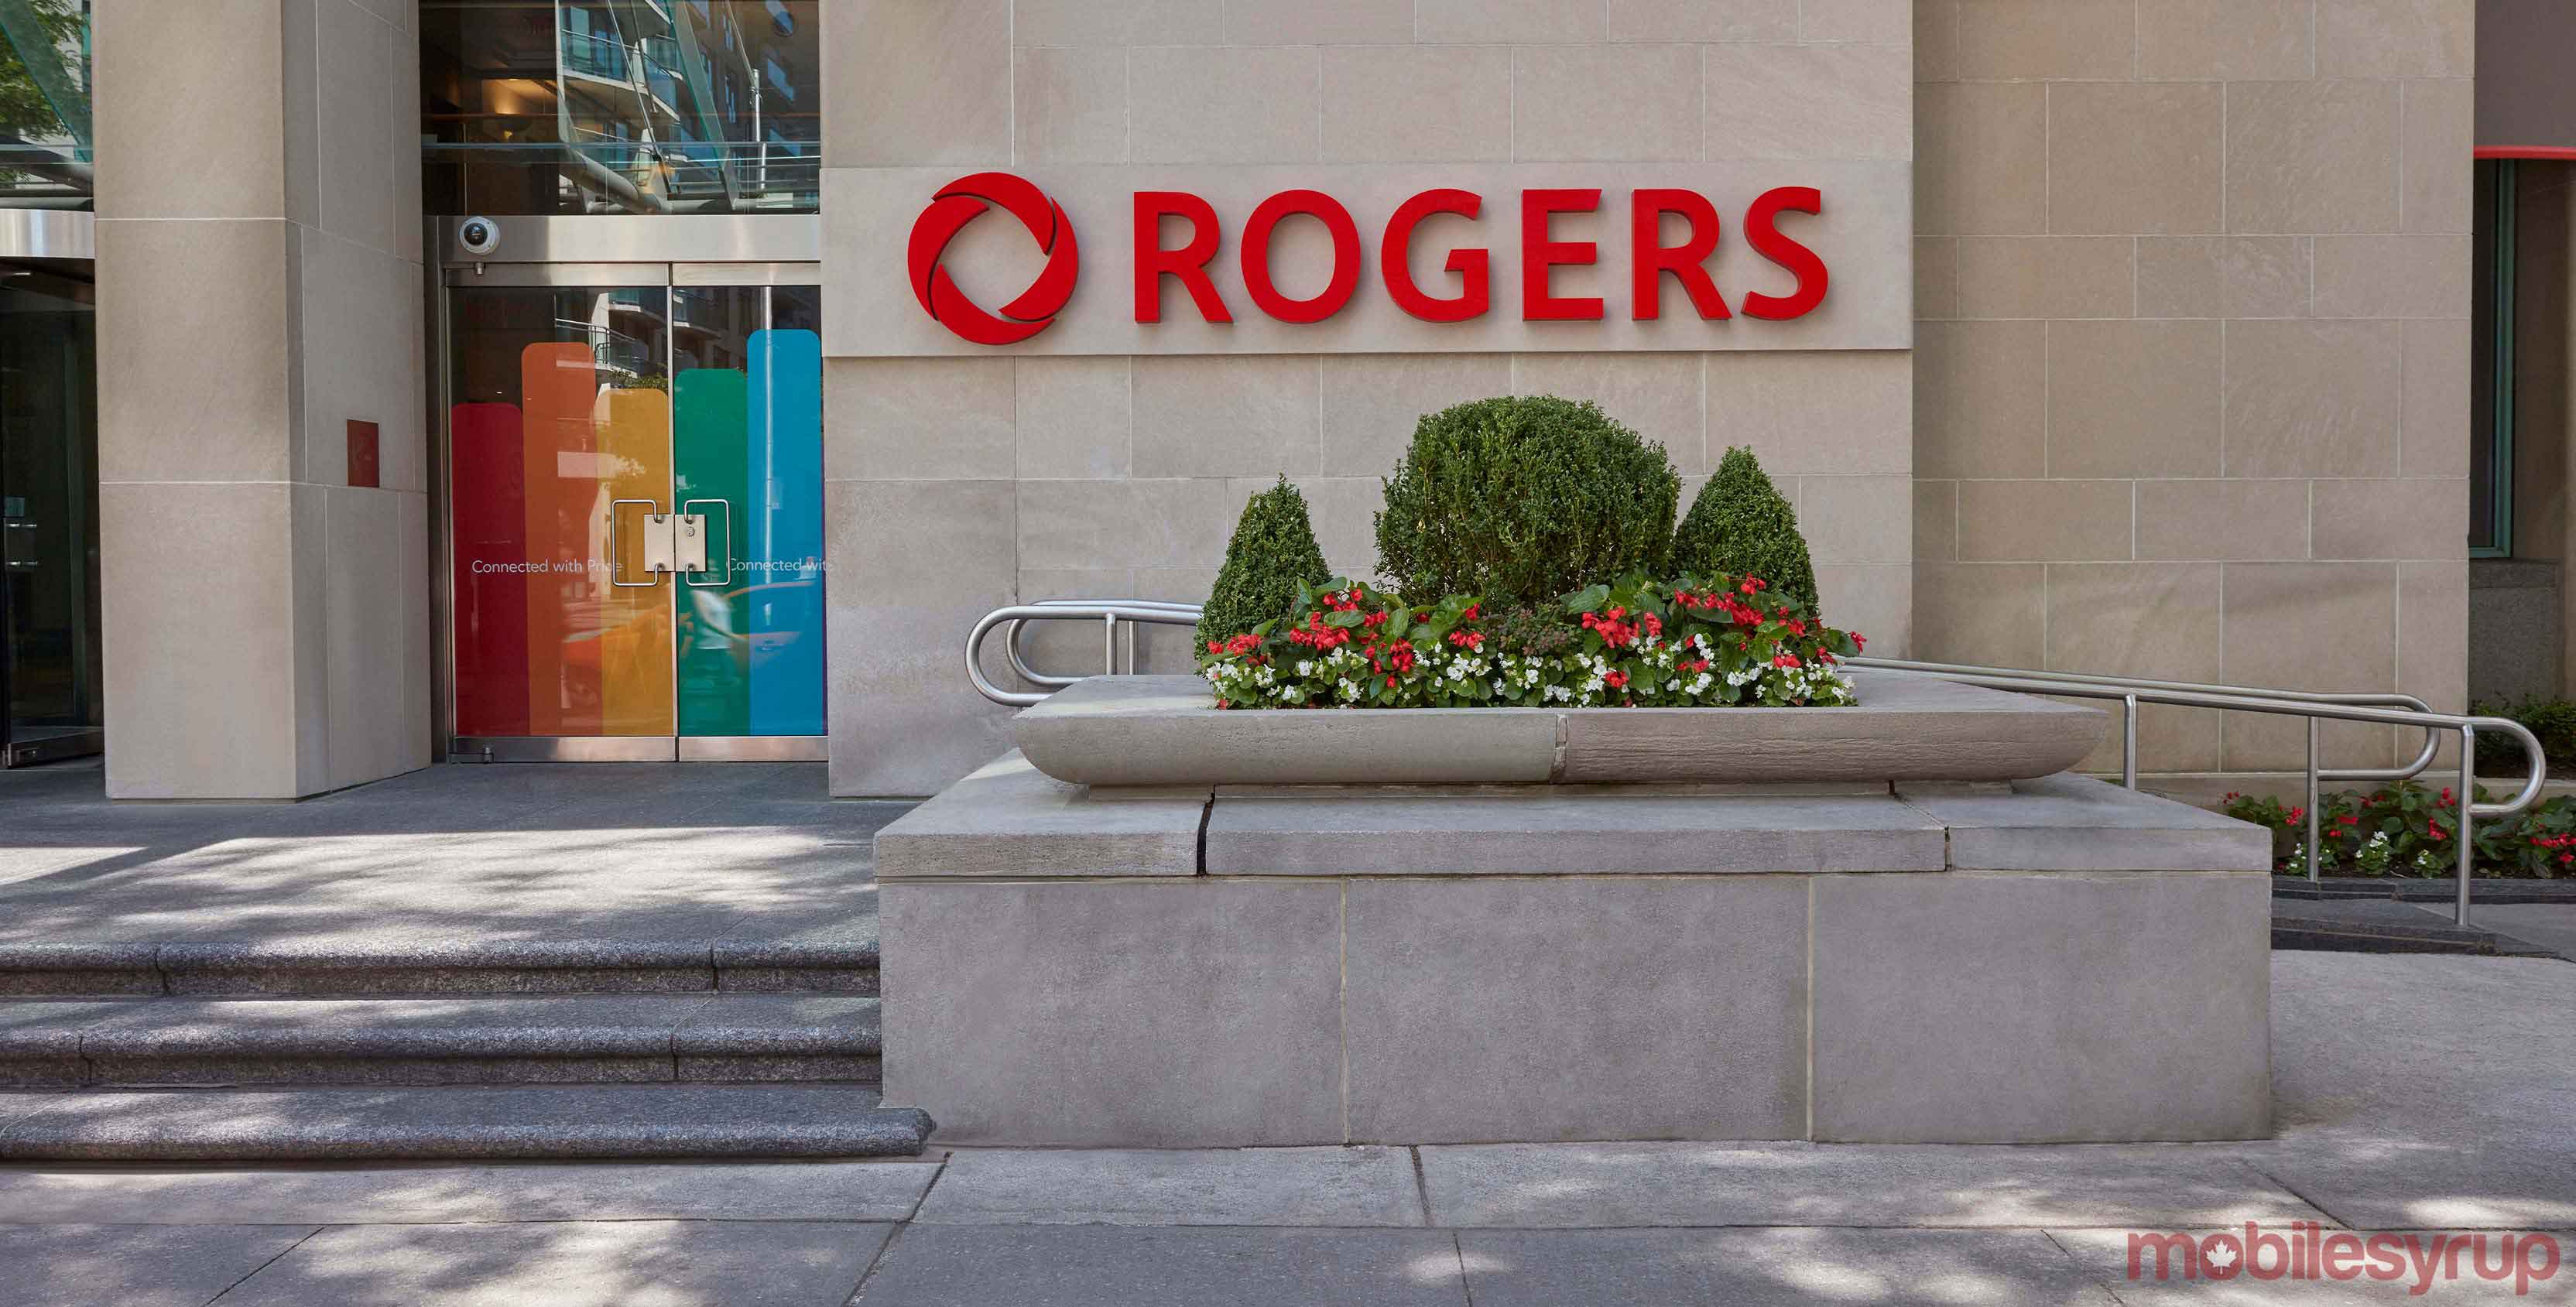 Rogers head office logo